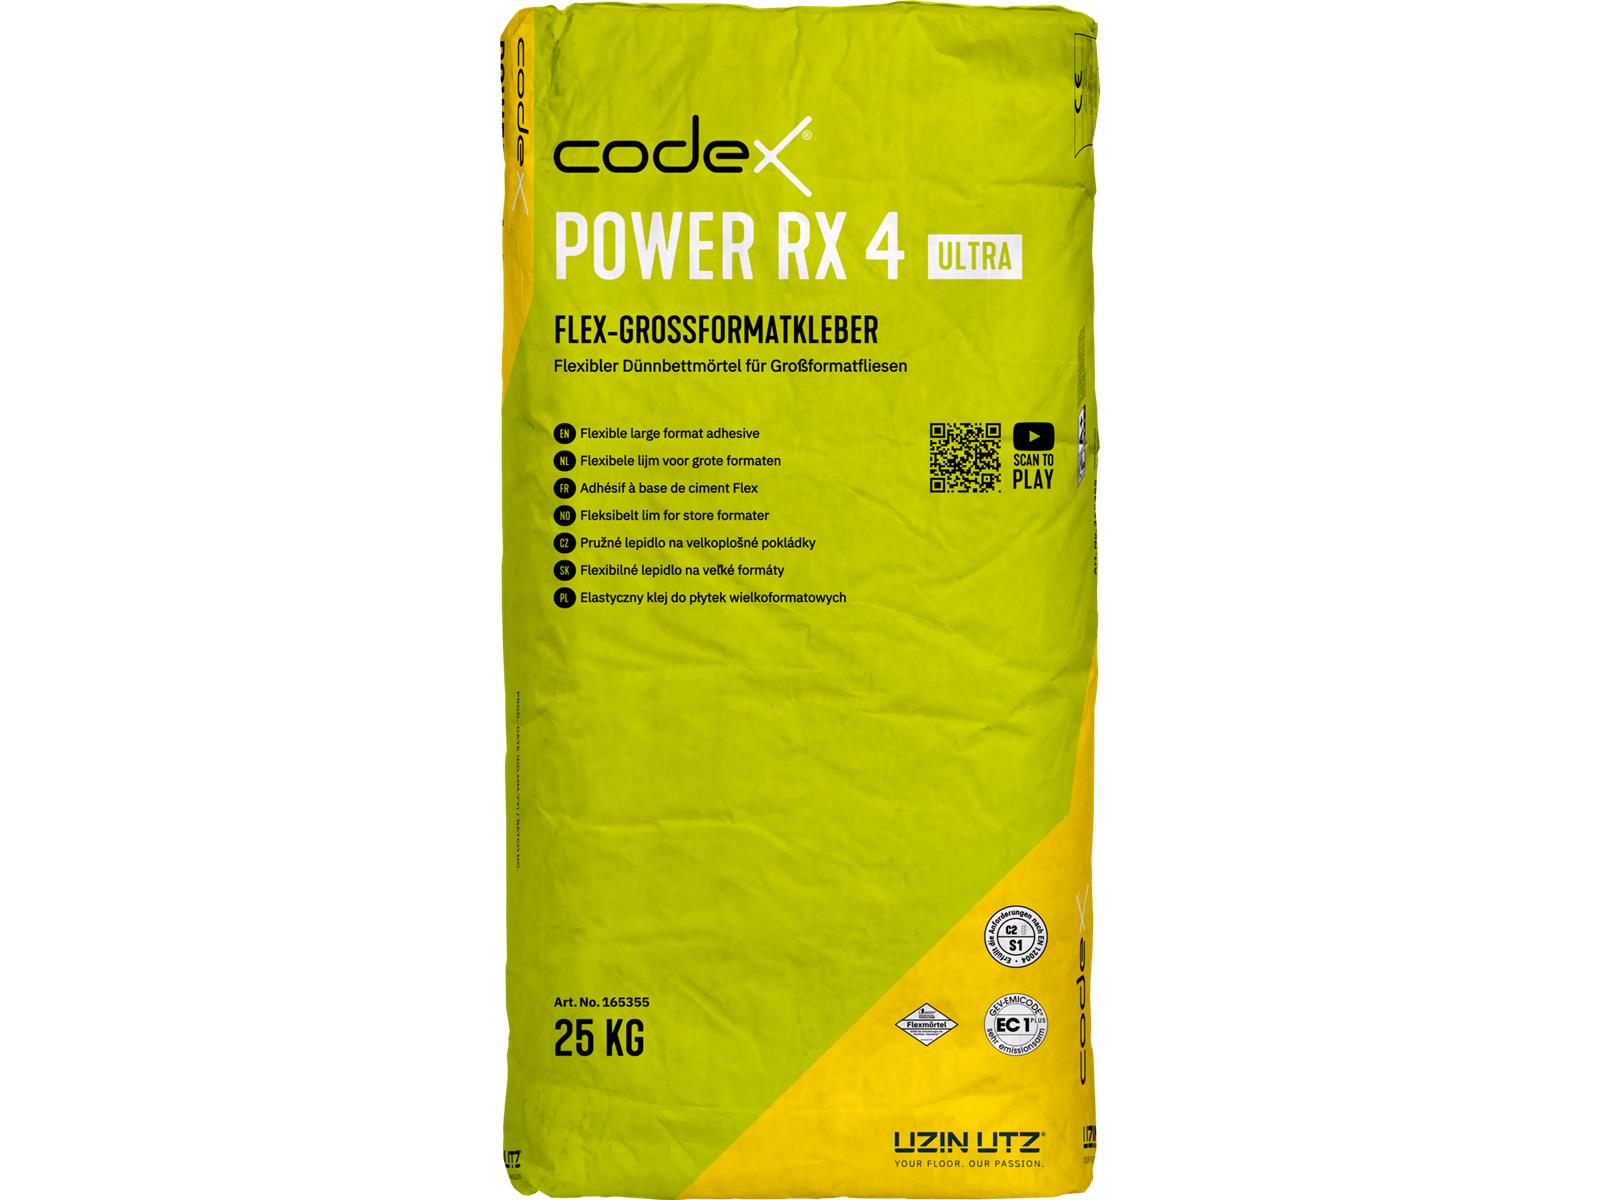 codex Power RX 4 Ultra -25 kg